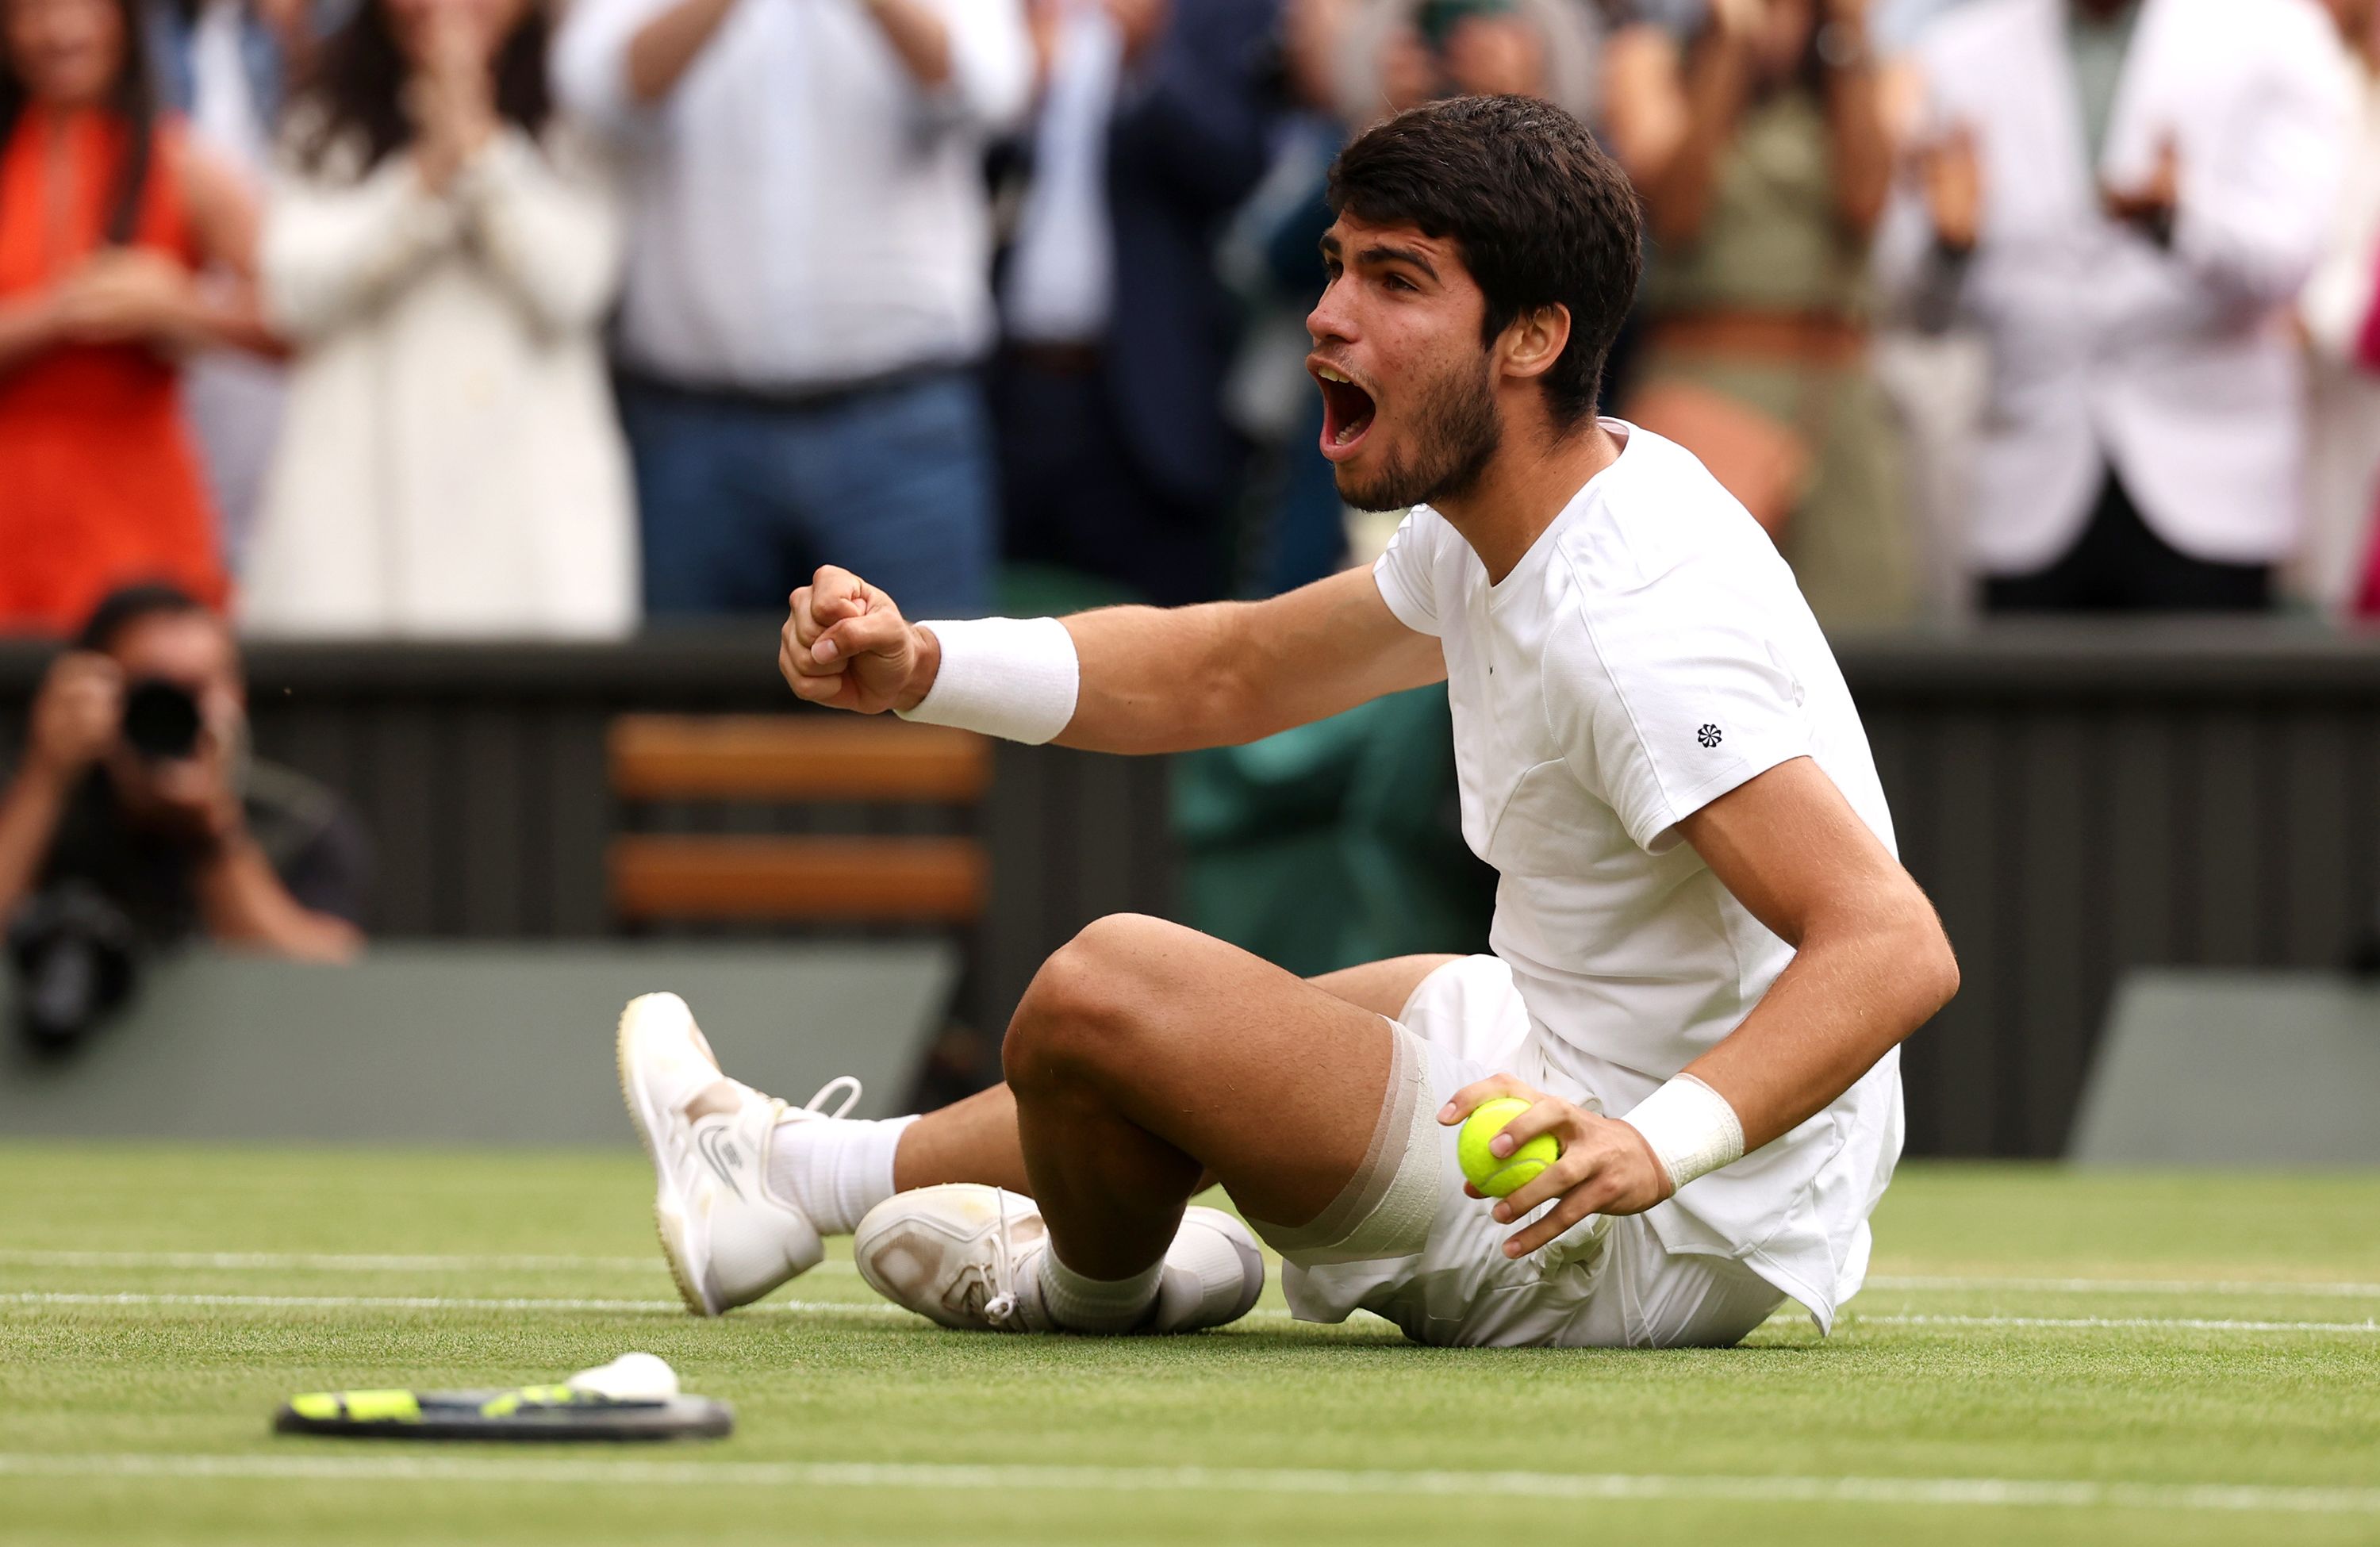 Watch: Alcaraz breaks Djokovic's streak of 15 straight tiebreaks in  Wimbledon